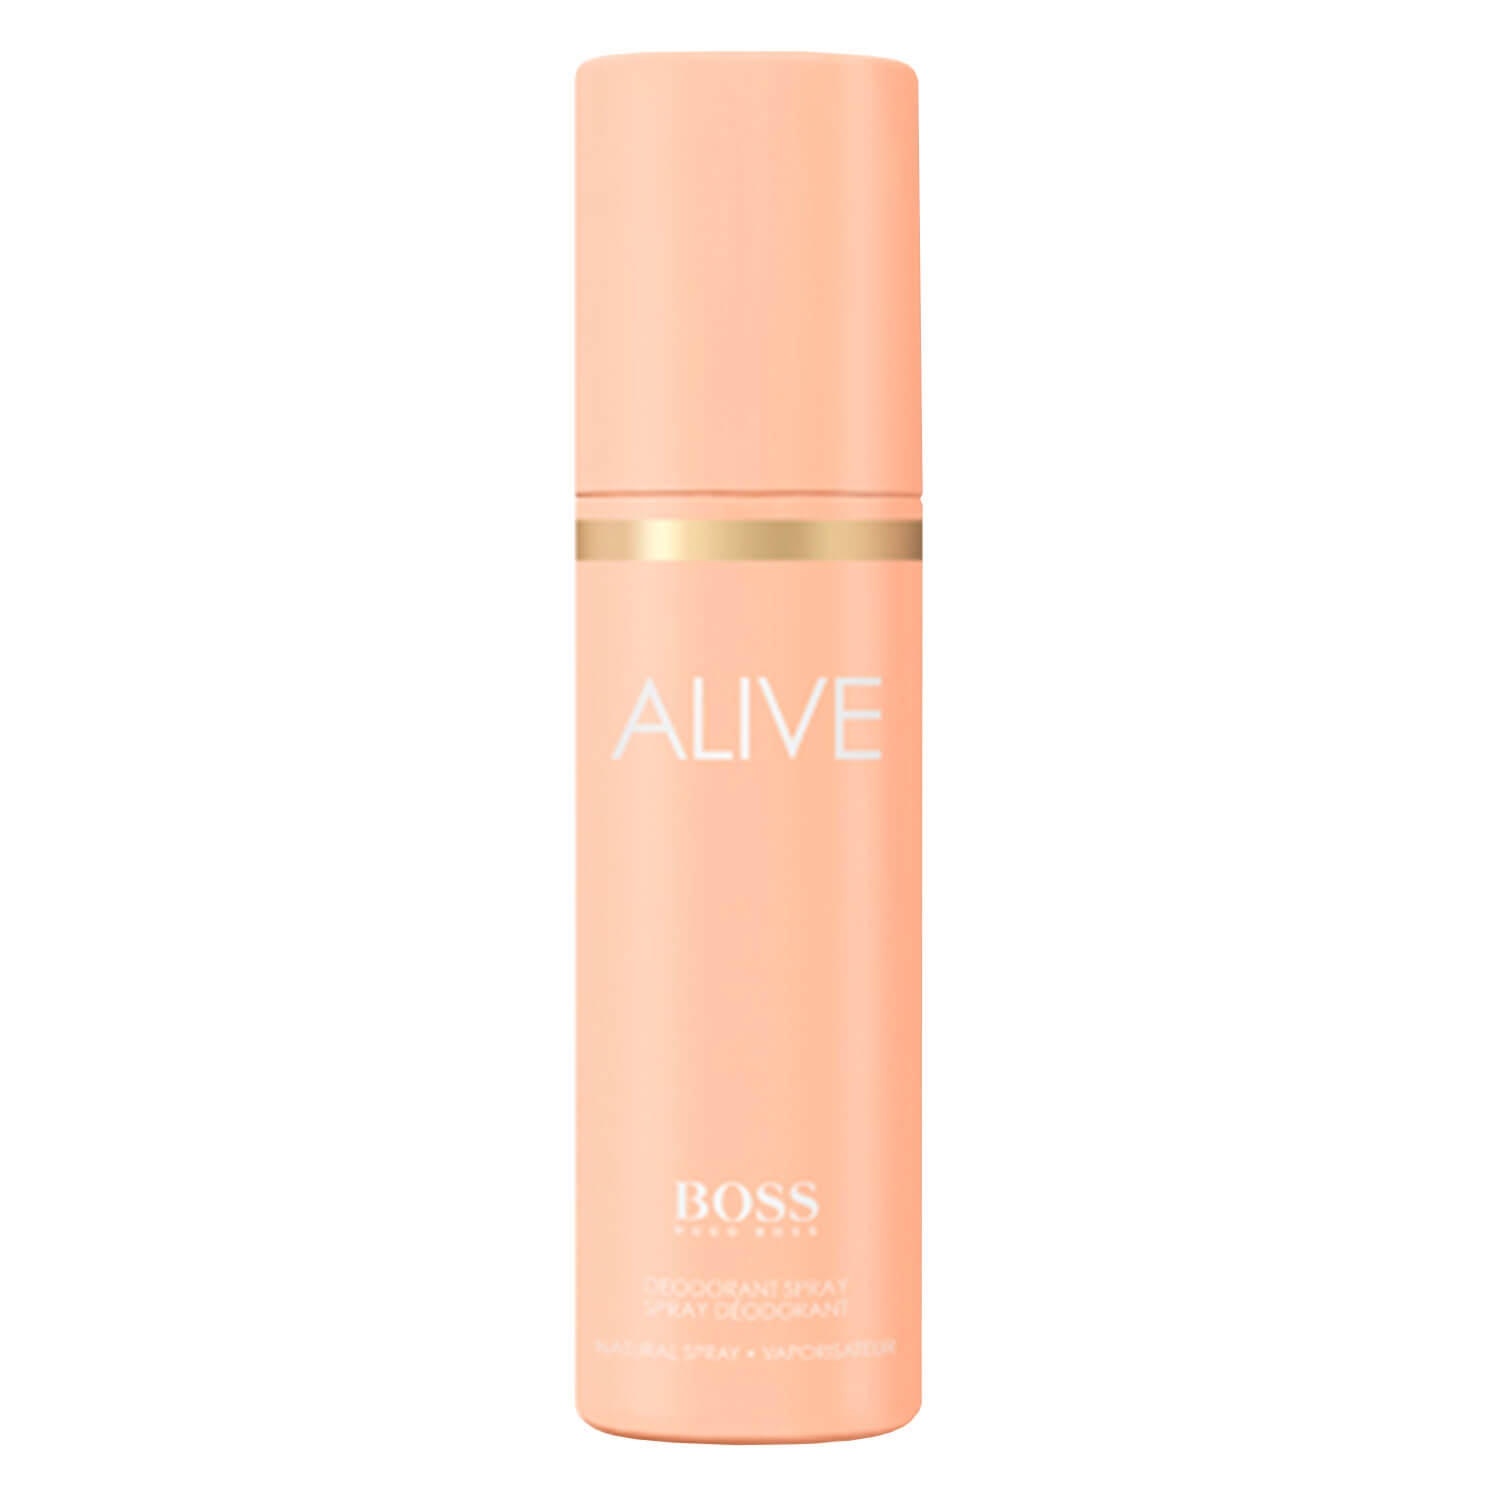 Produktbild von Boss Alive - Deodorant Spray